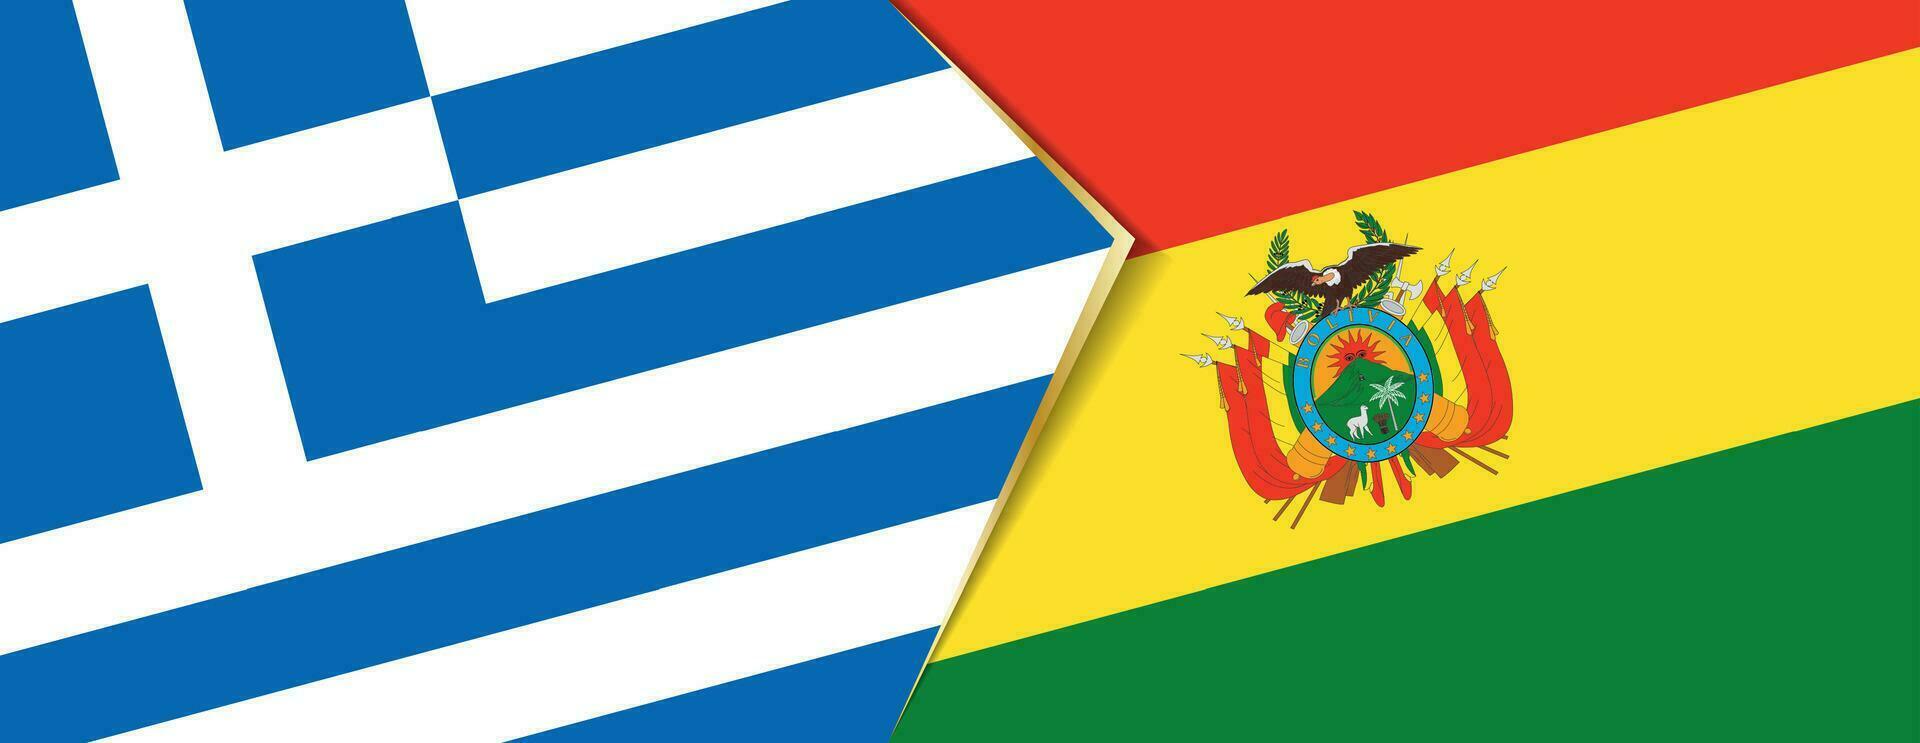 Grèce et Bolivie drapeaux, deux vecteur drapeaux.